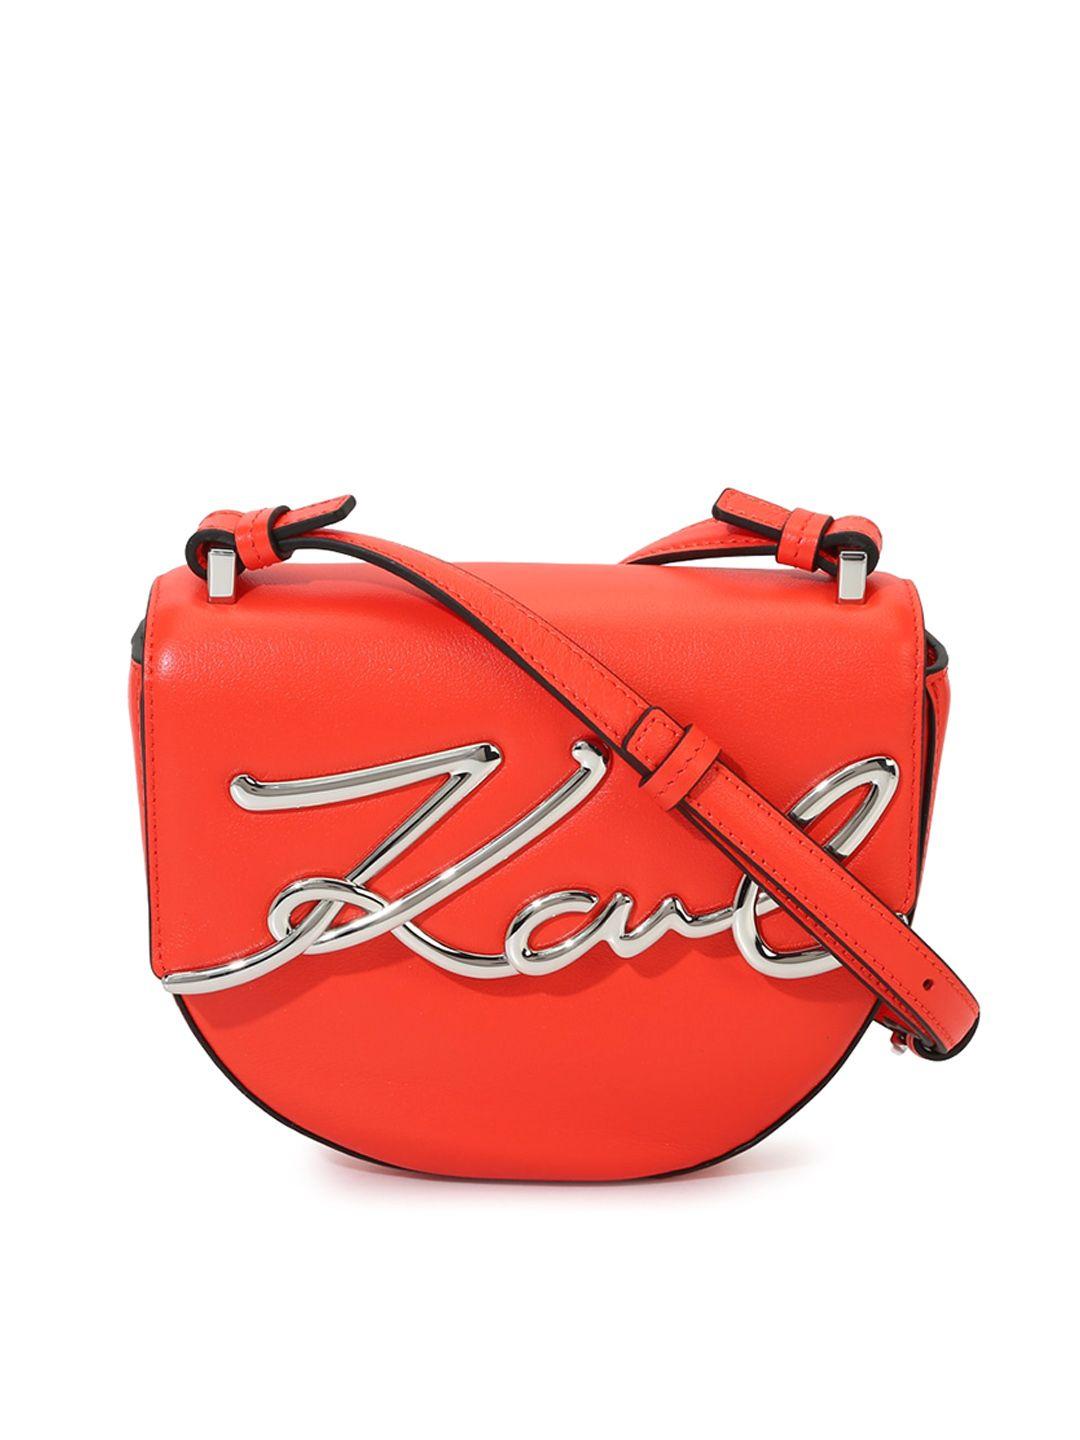 karl lagerfeld brand logo embellished half moon leather sling bag